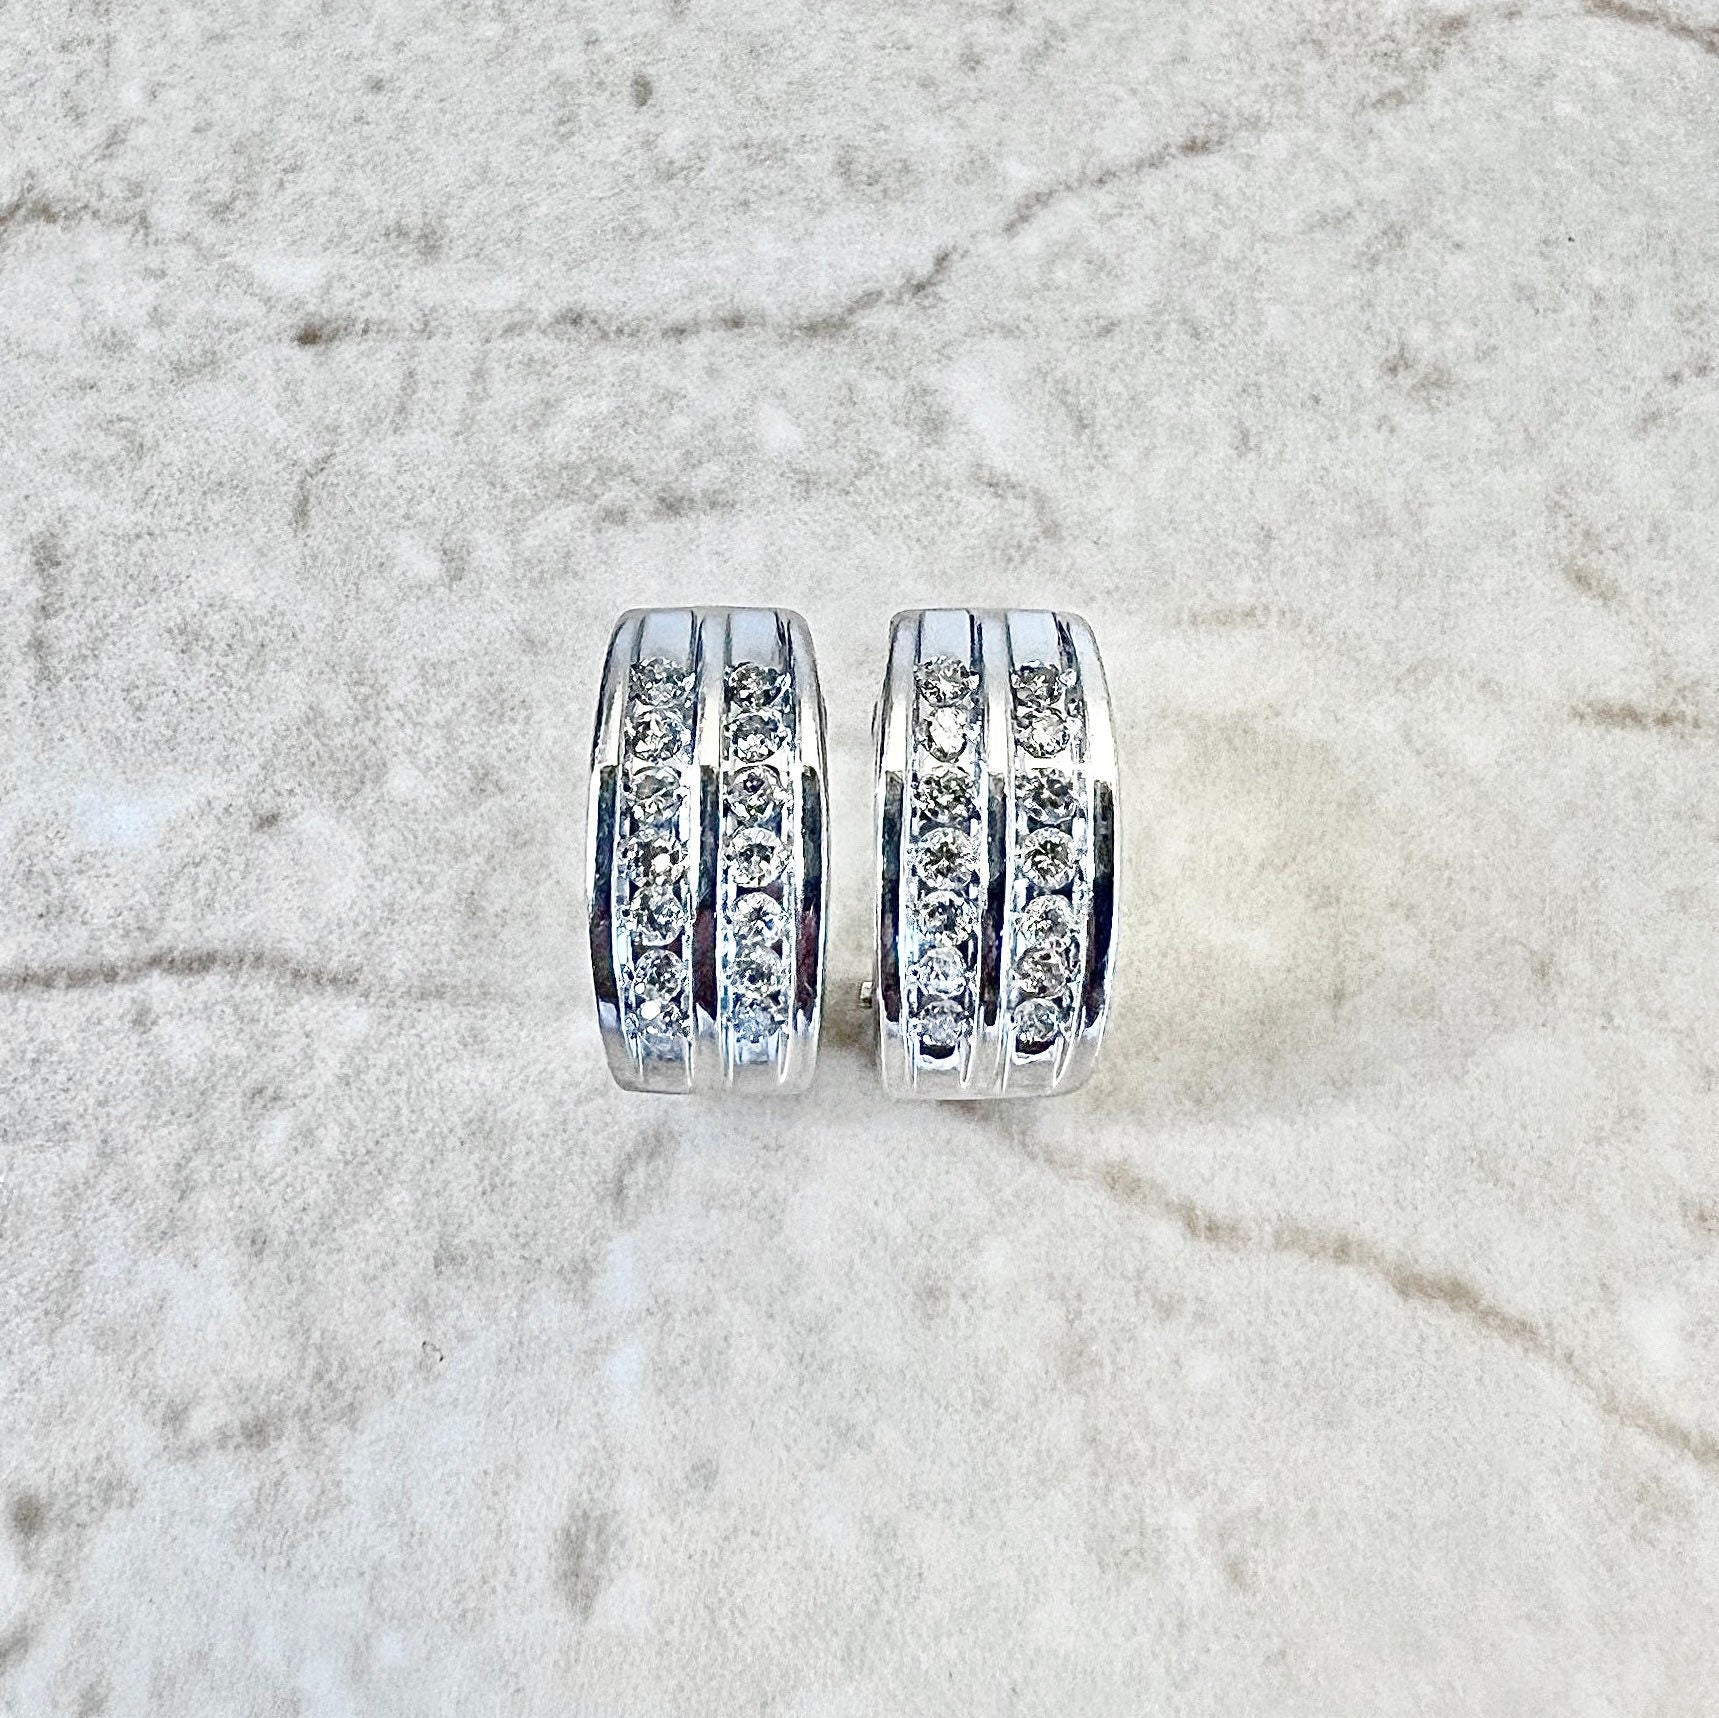 14K Diamond Huggie Earrings - 2 Row White Gold Diamond Earrings - Earclip Earrings - Birthday Gift - Best Gift For Her - Wedding Earrings